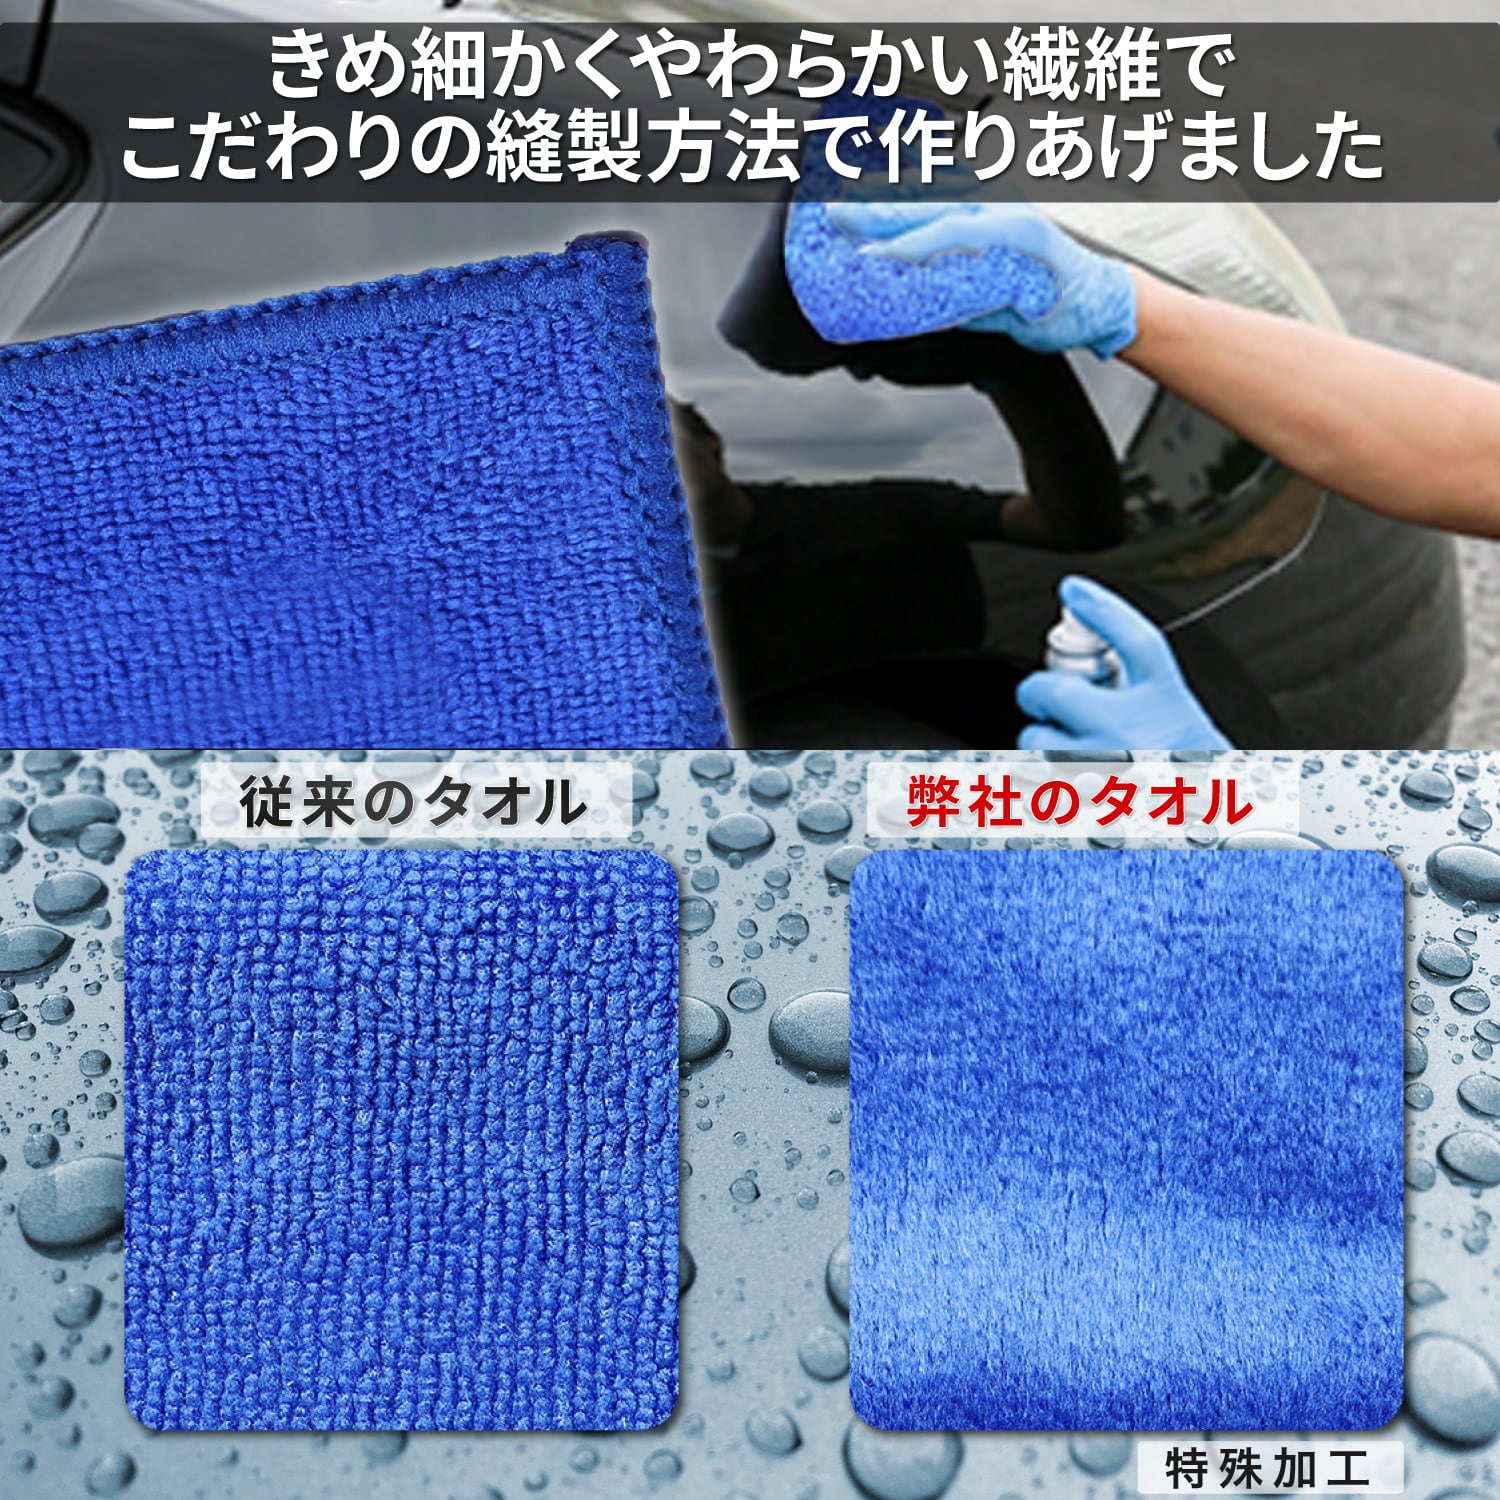 オープニング 洗車 セット ムートンスポンジ 2個マイクロファイバー タオル 2枚